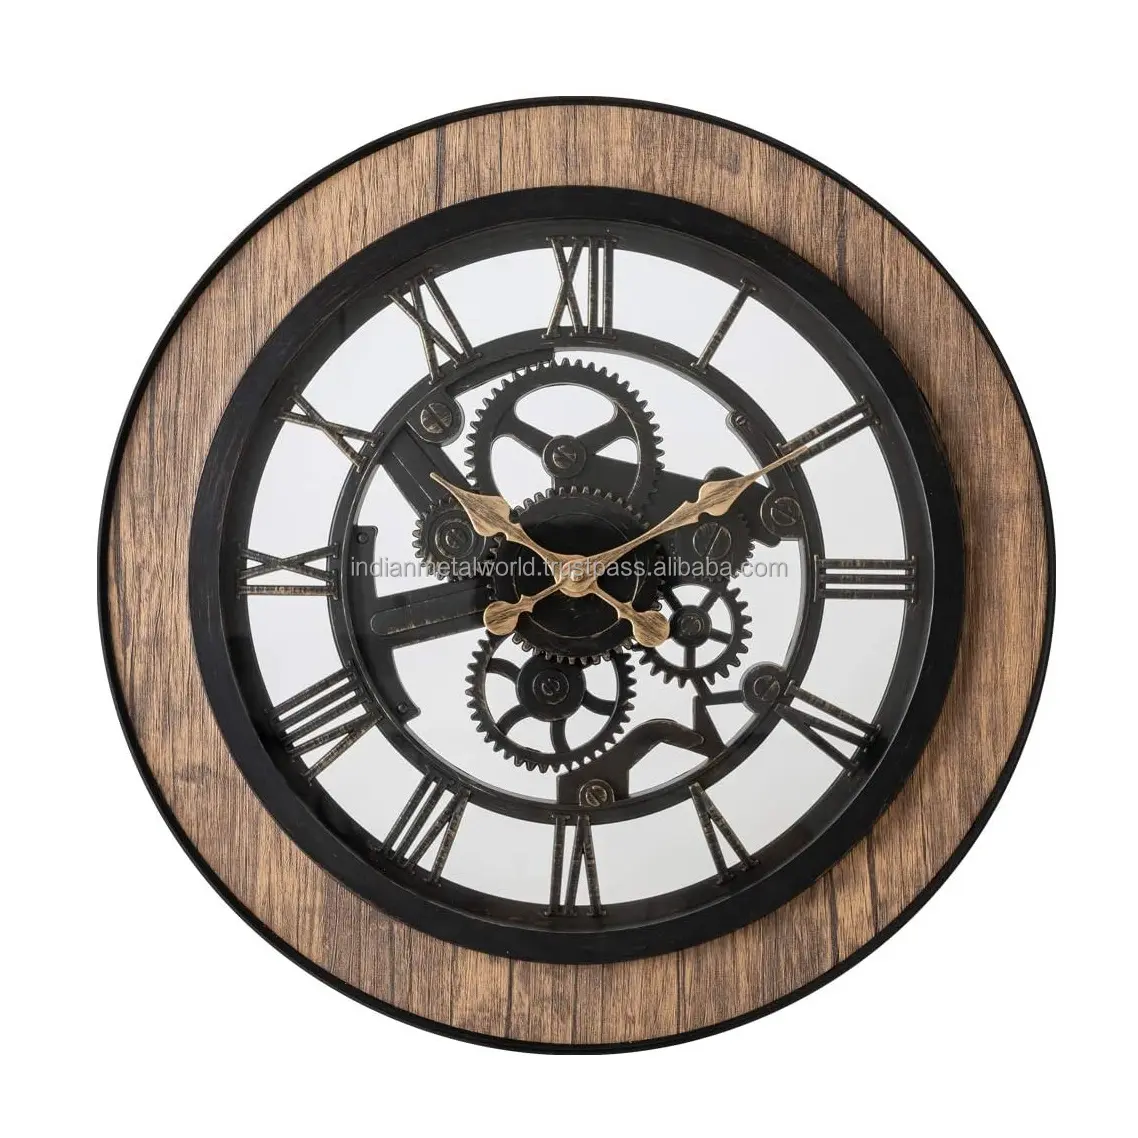 Reloj de pared decorativo de madera y metal para el hogar, productos de decoración artística para pared, gran oferta, 2021